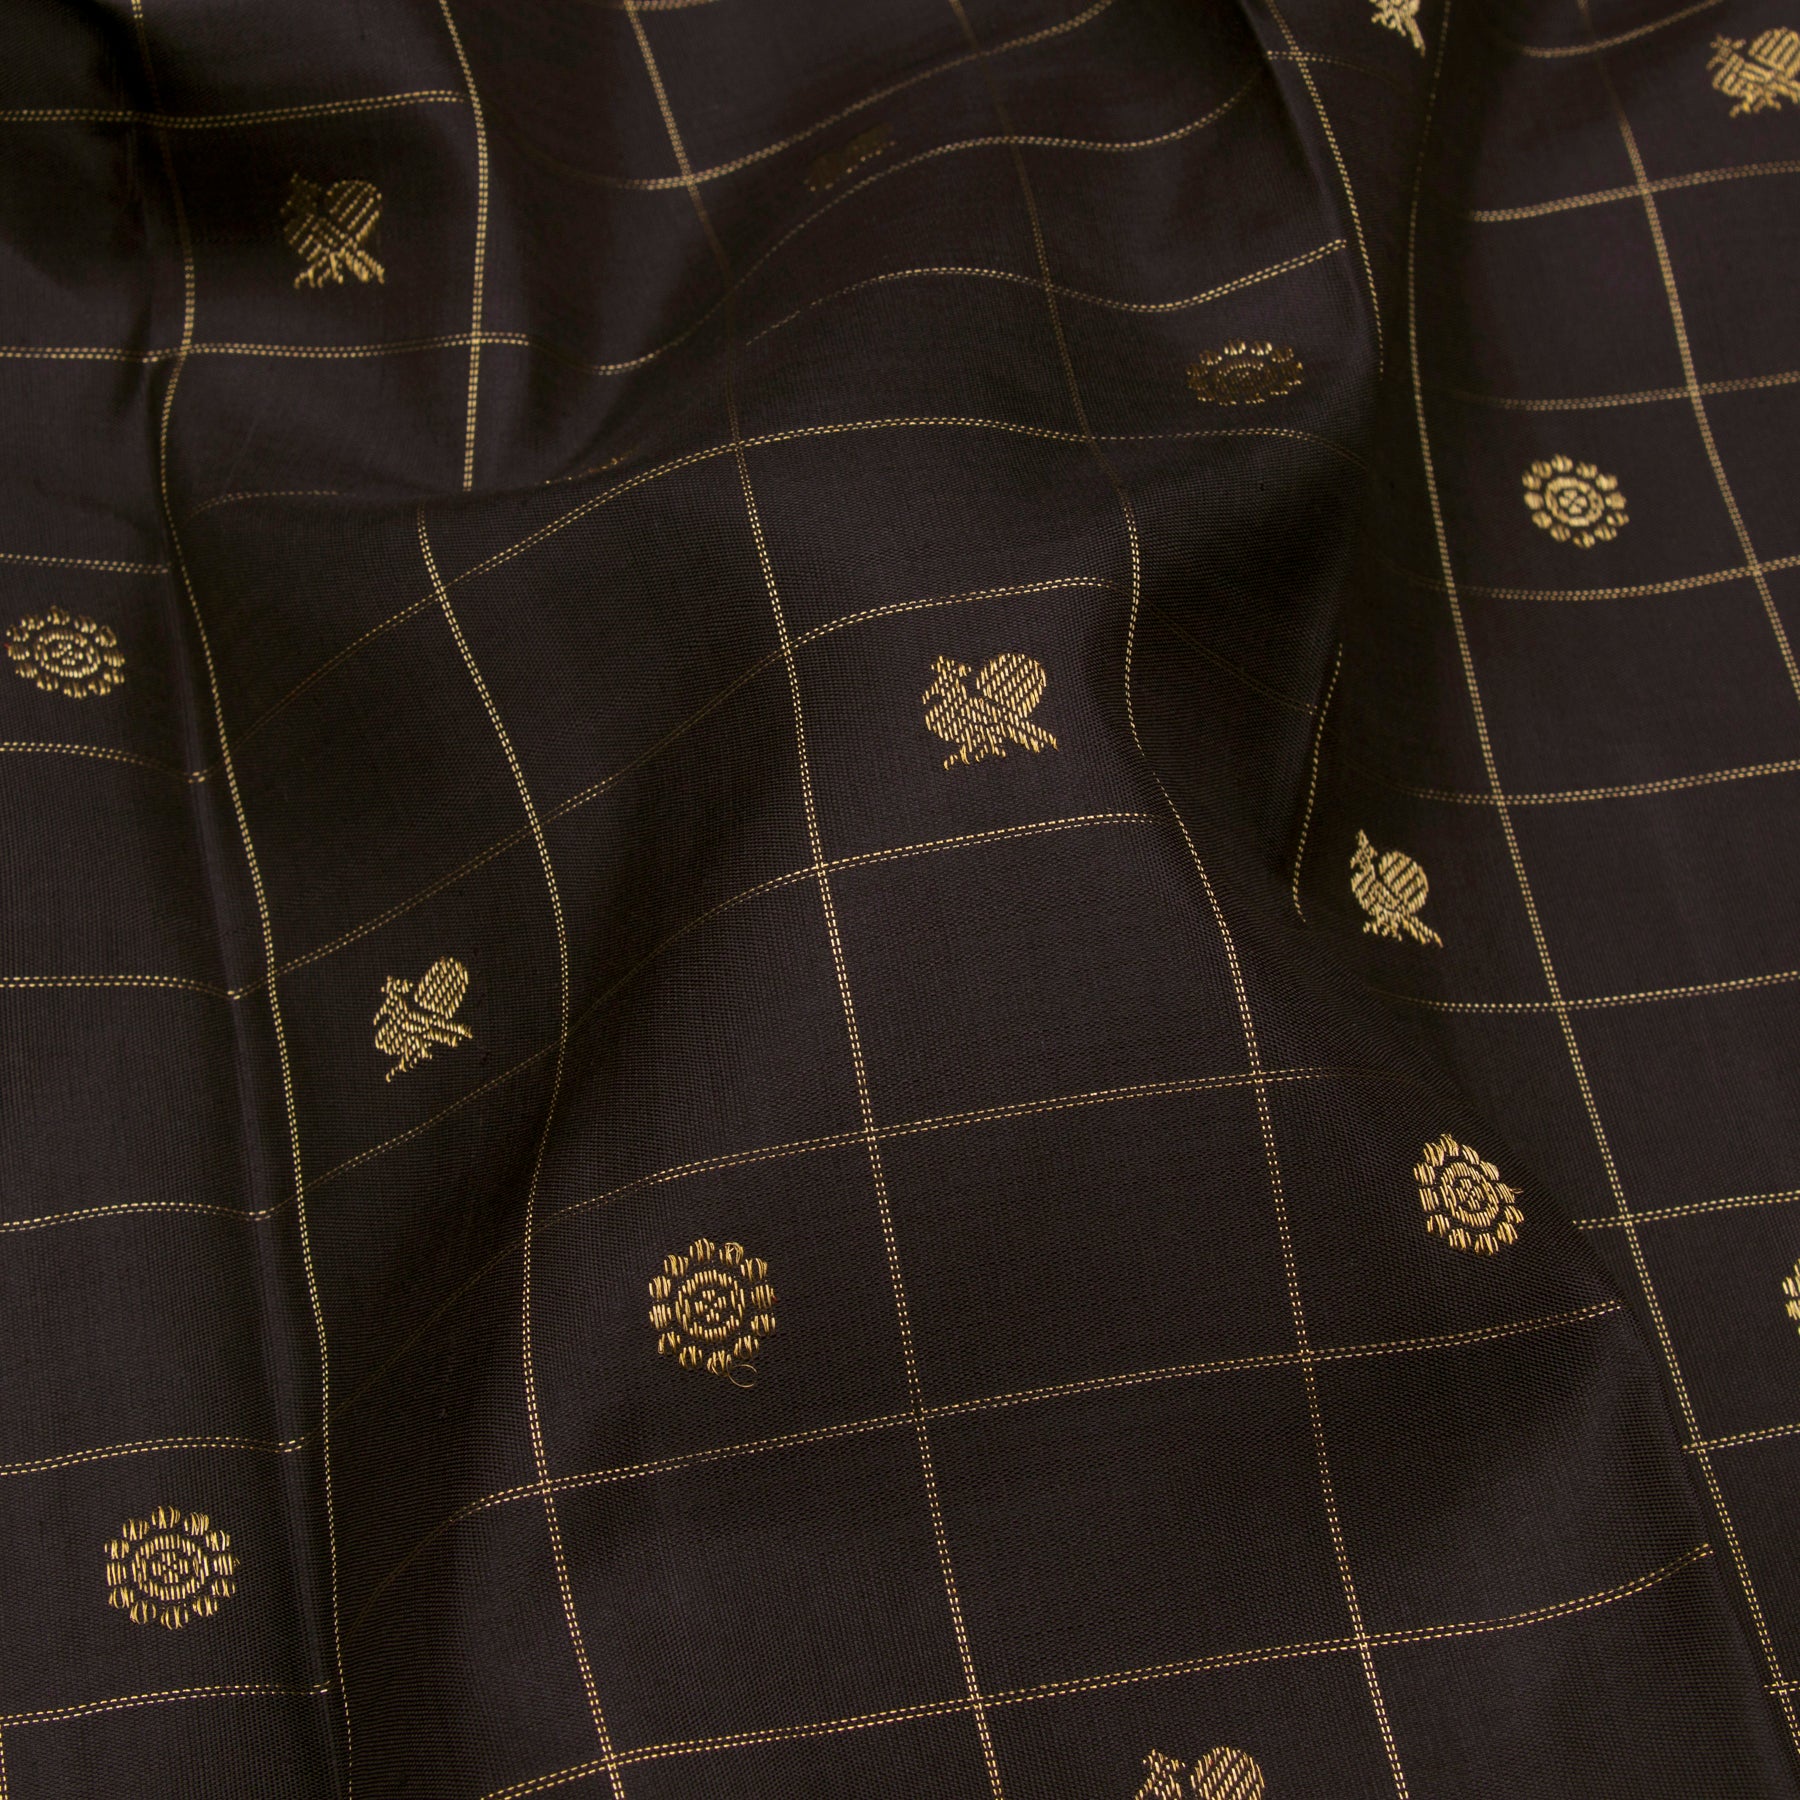 Kanakavalli Kanjivaram Silk Sari 23-599-HS001-12079 - Fabric View